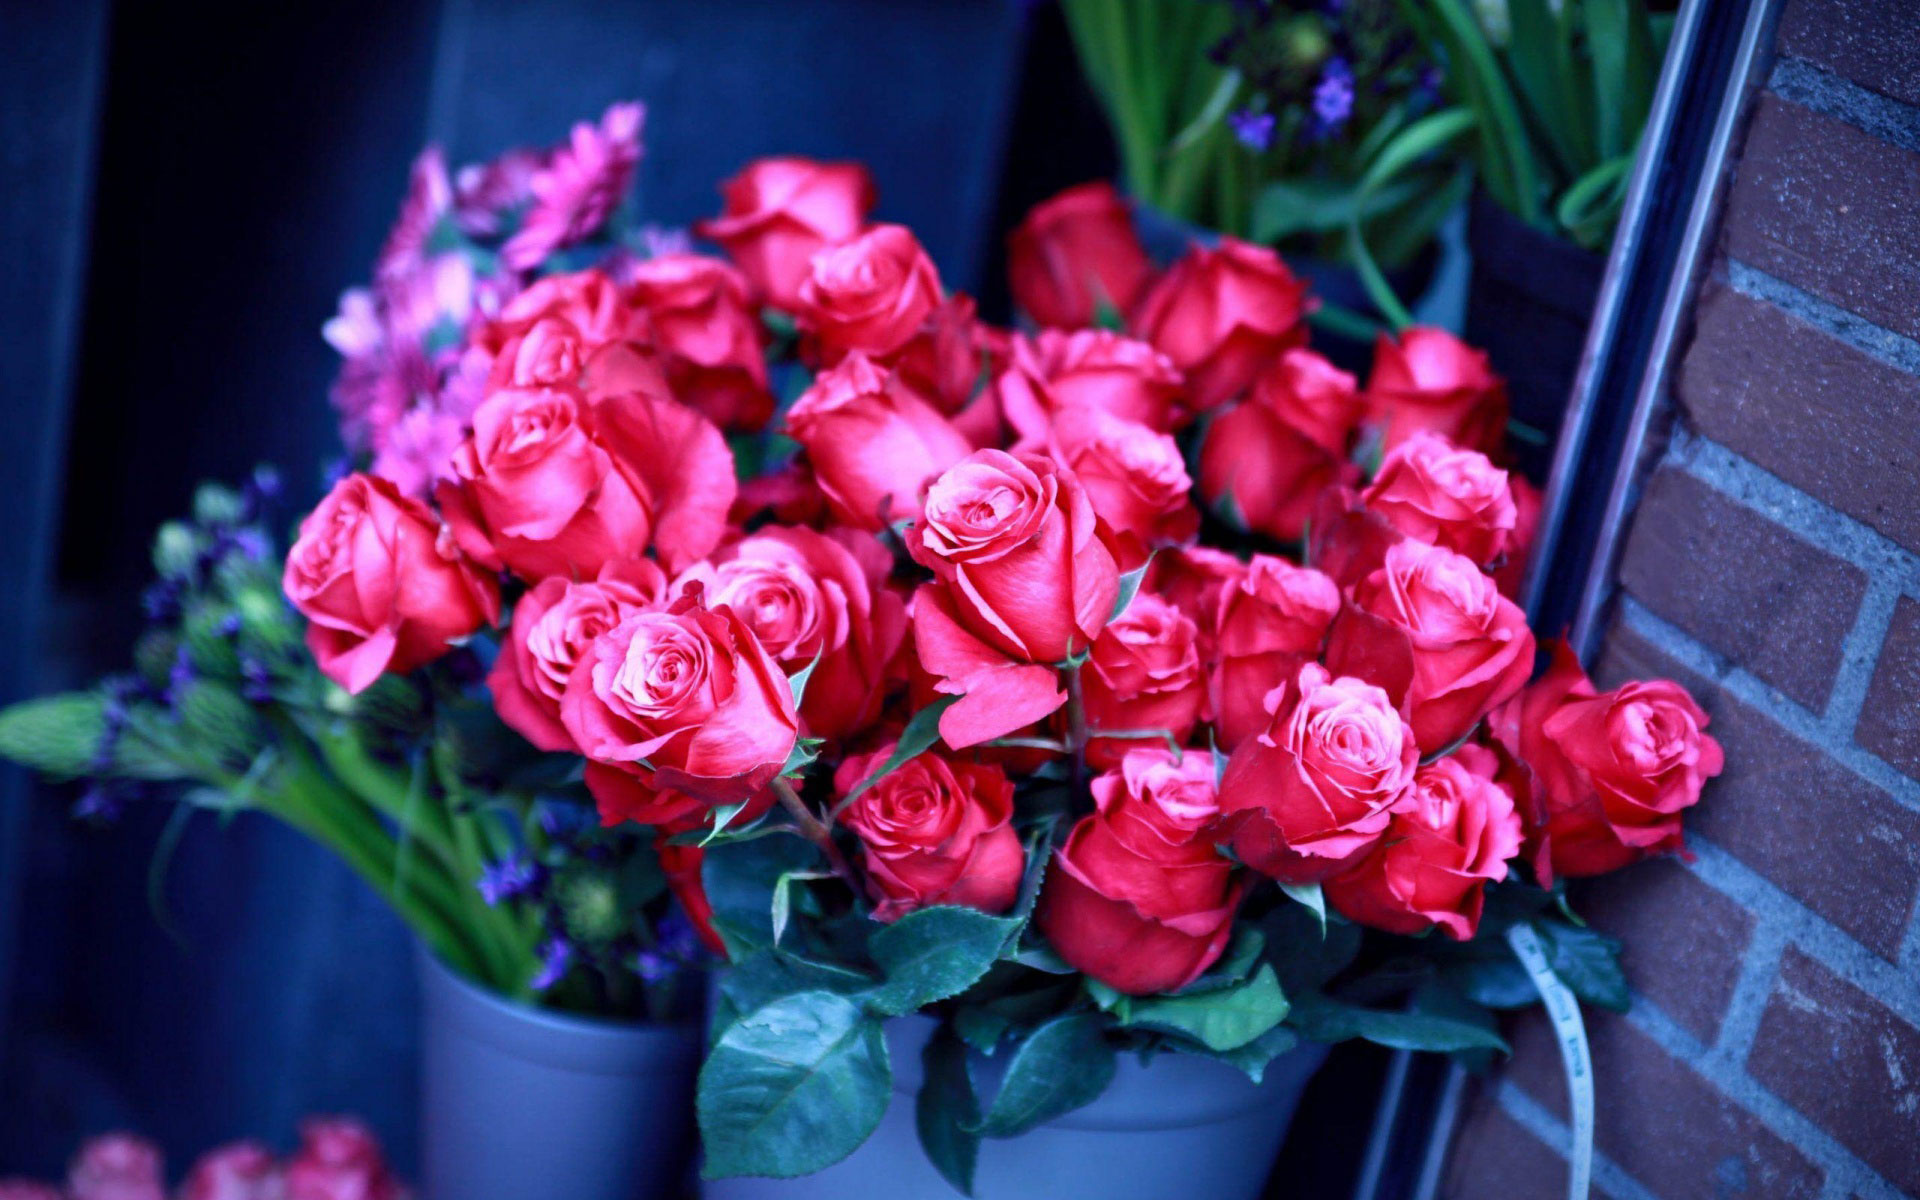 розы розовые фото букеты красивые на заставку